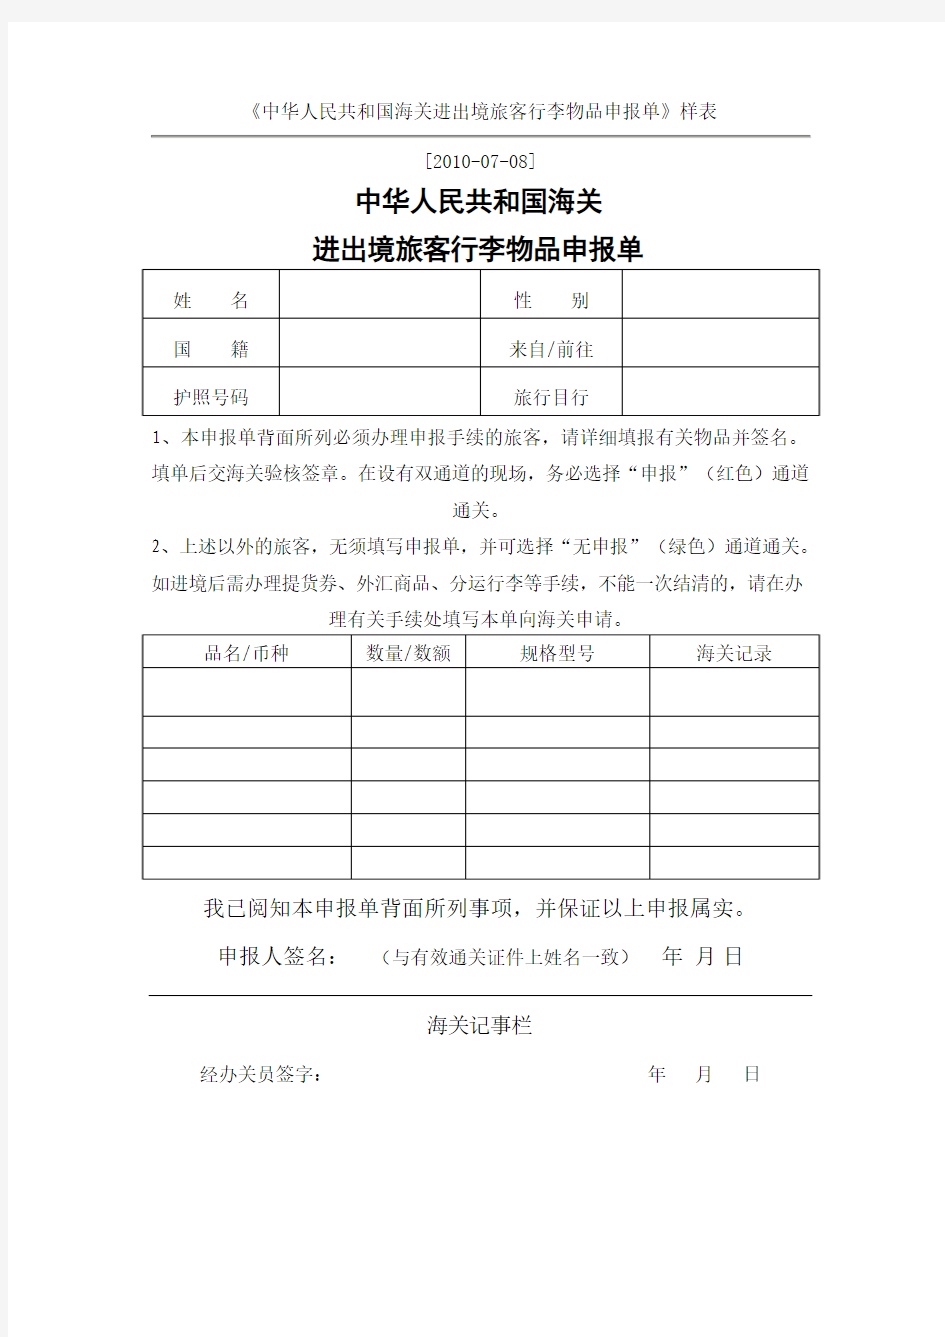 中华人民共和国海关进出境旅客行李物品申报单